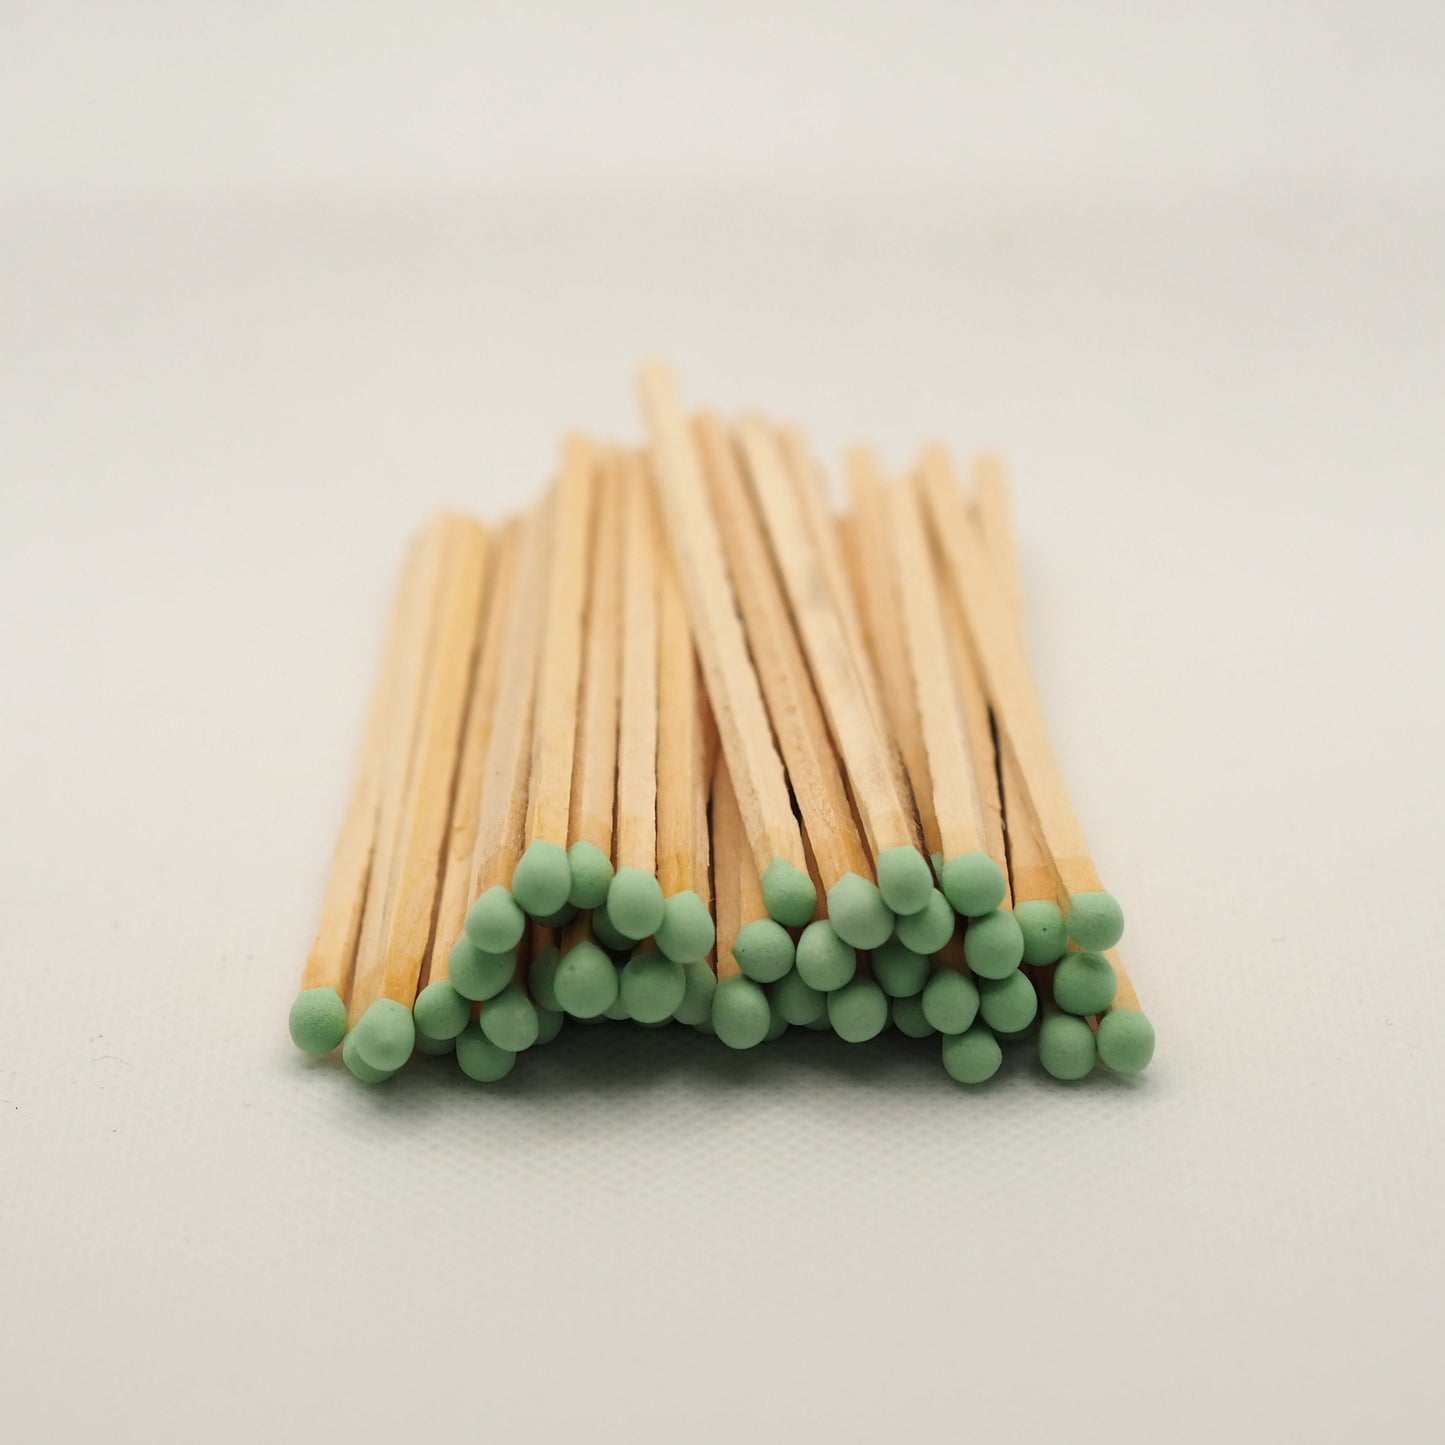 Mint green tip matches